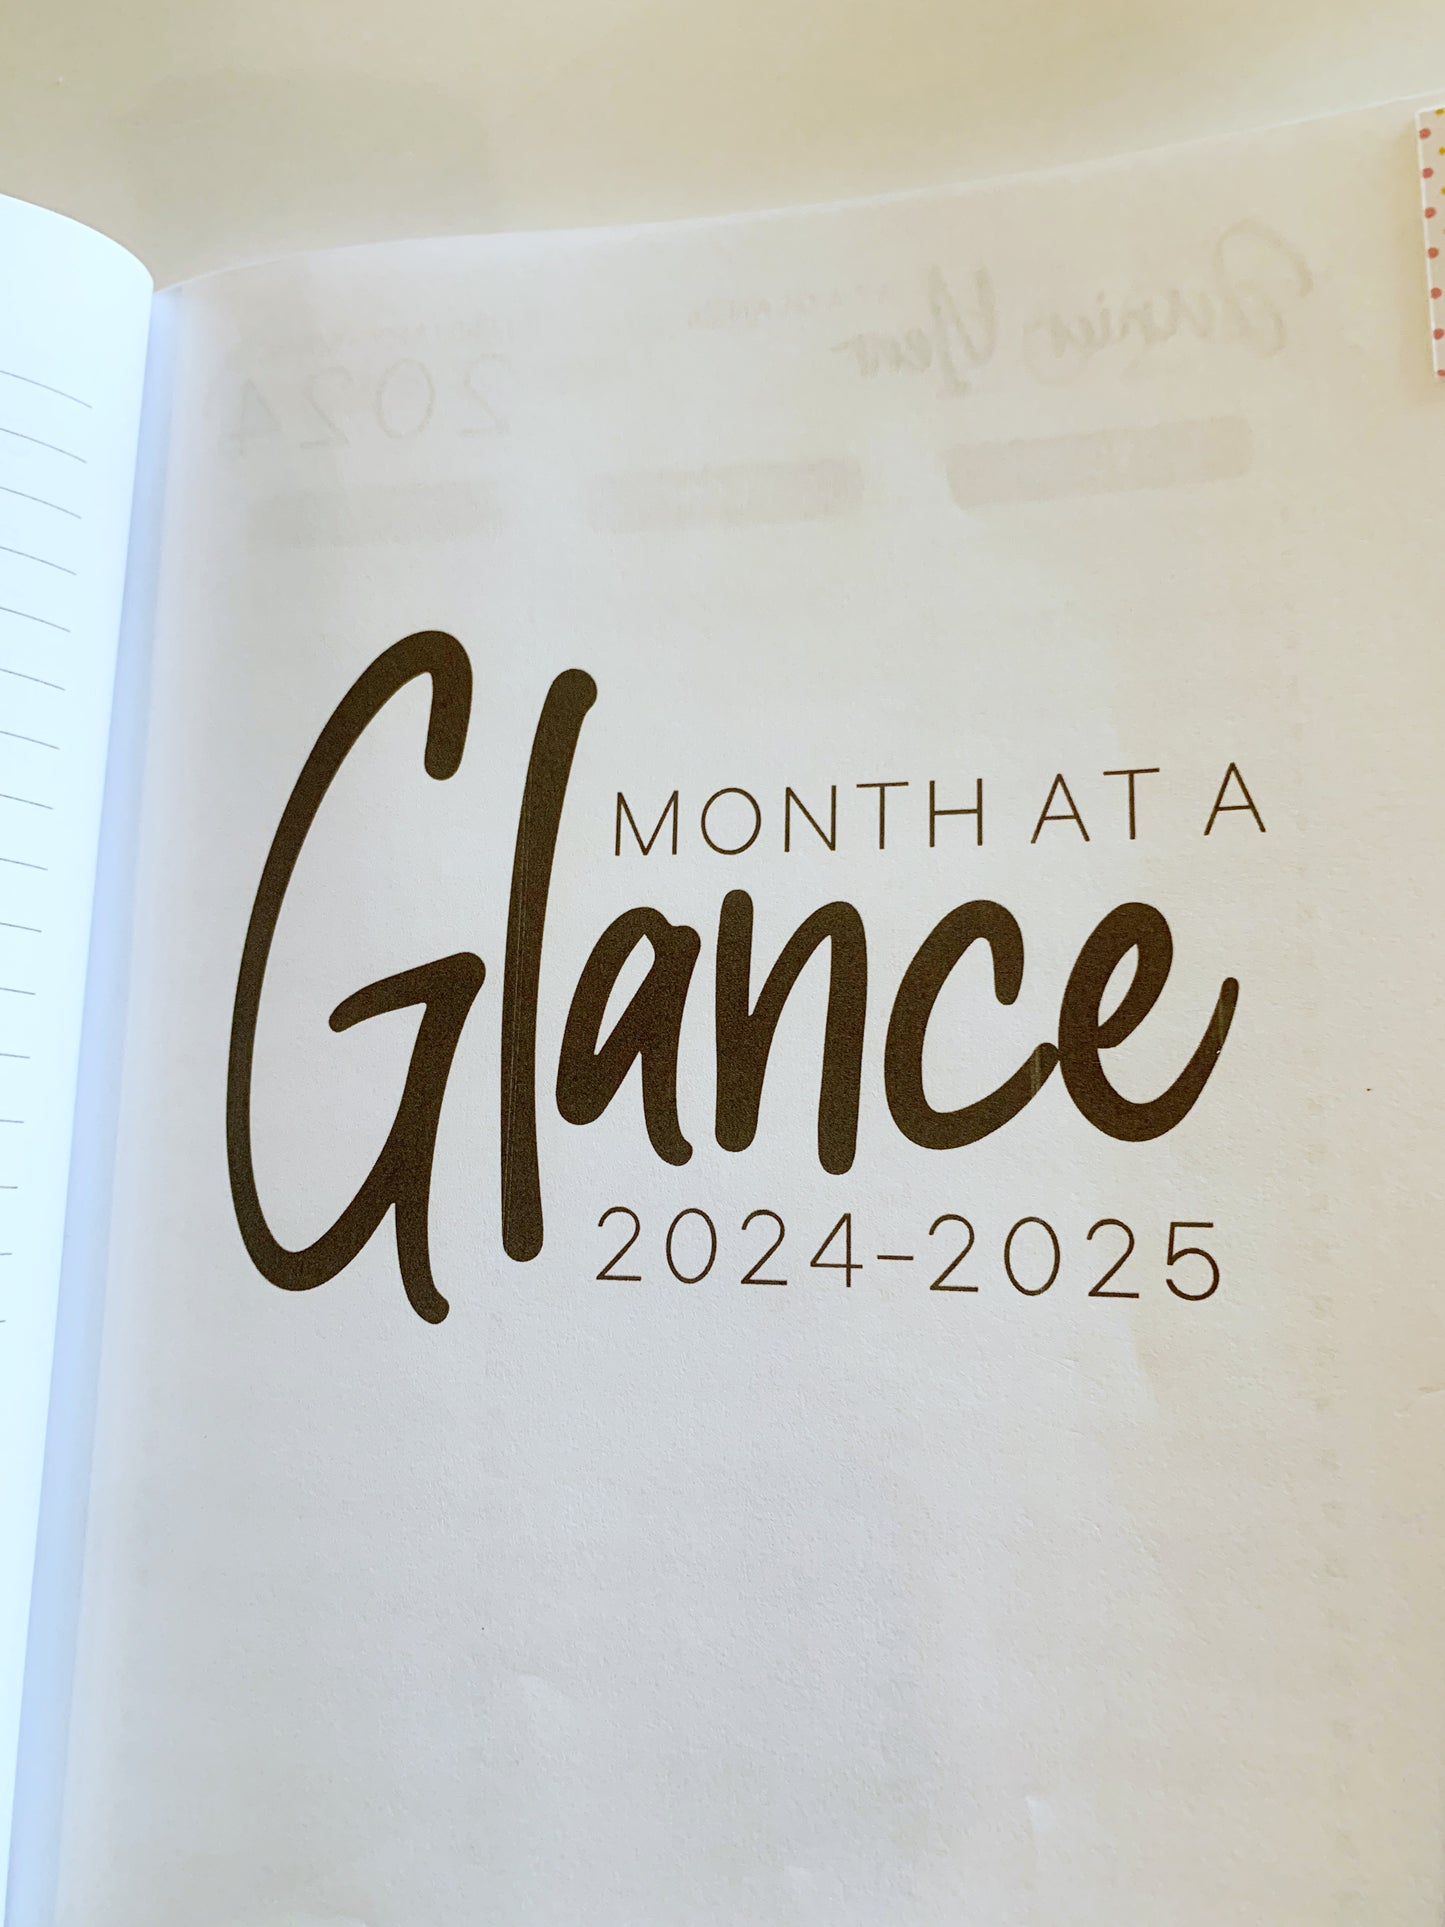 Senior Year Planner for Mom 2024-2025